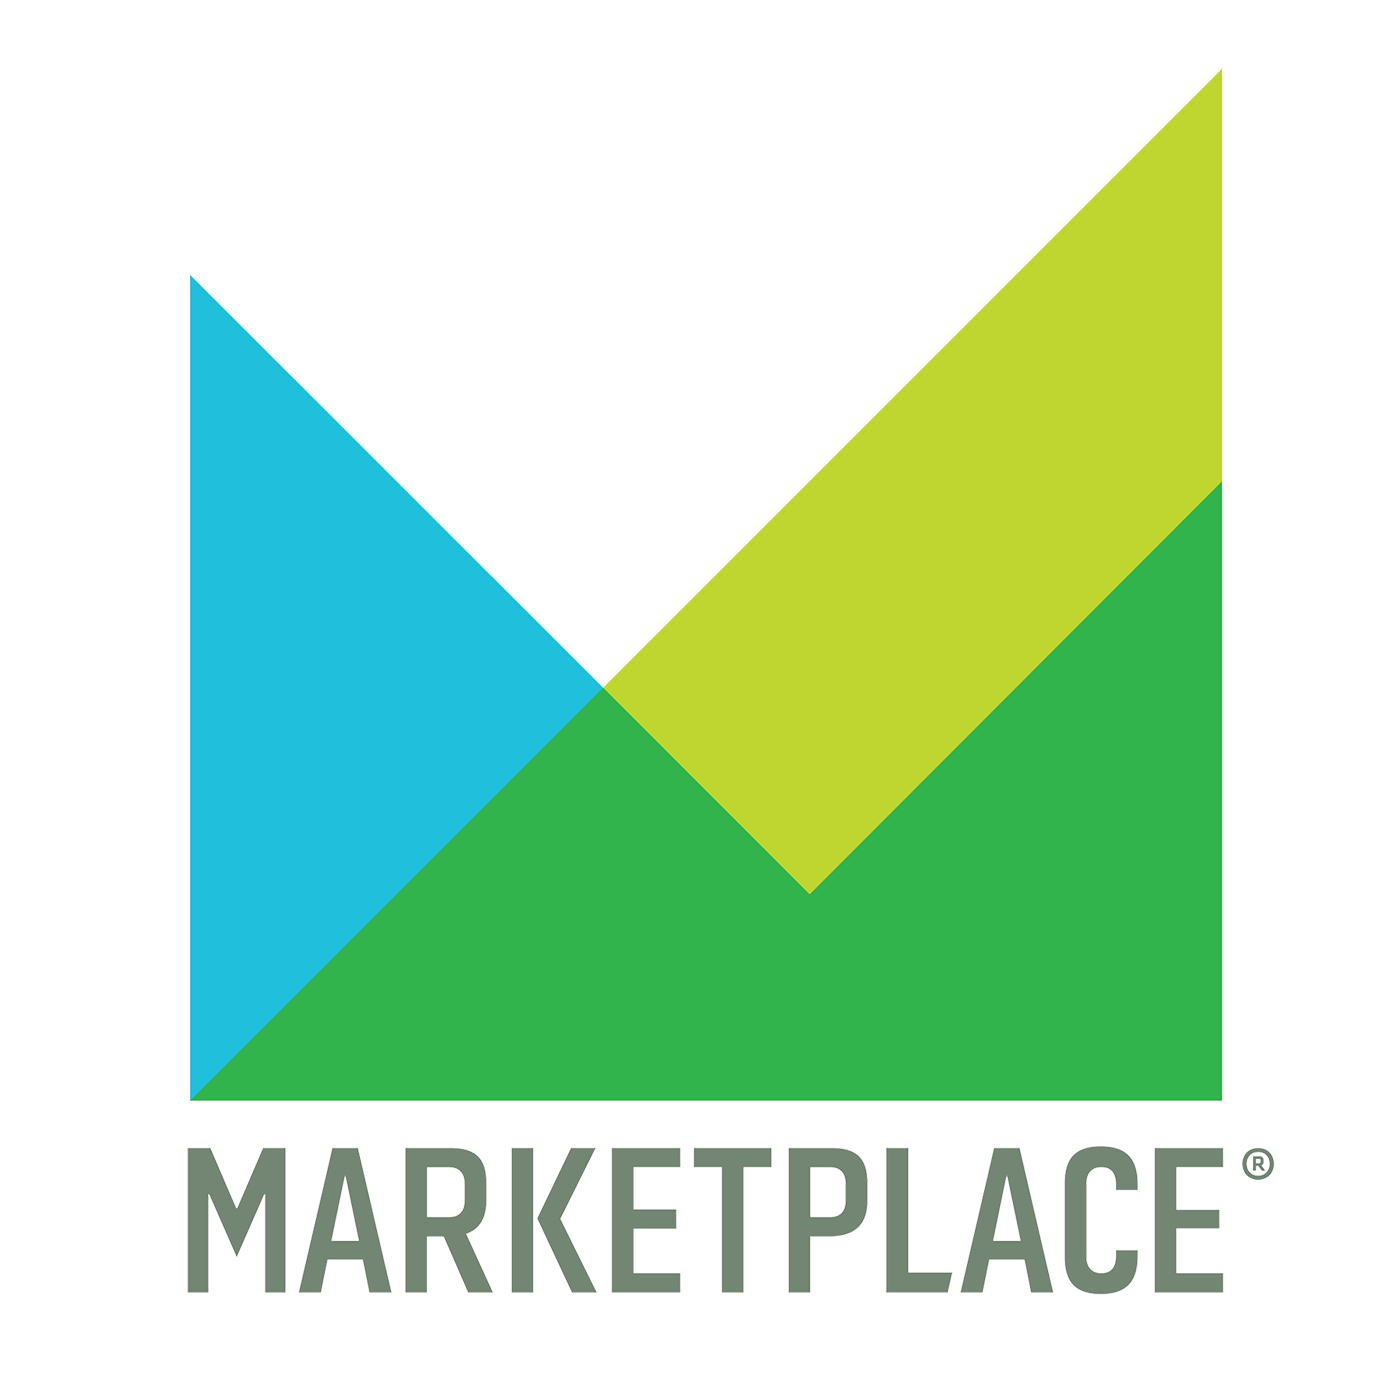 Marketplace:Marketplace